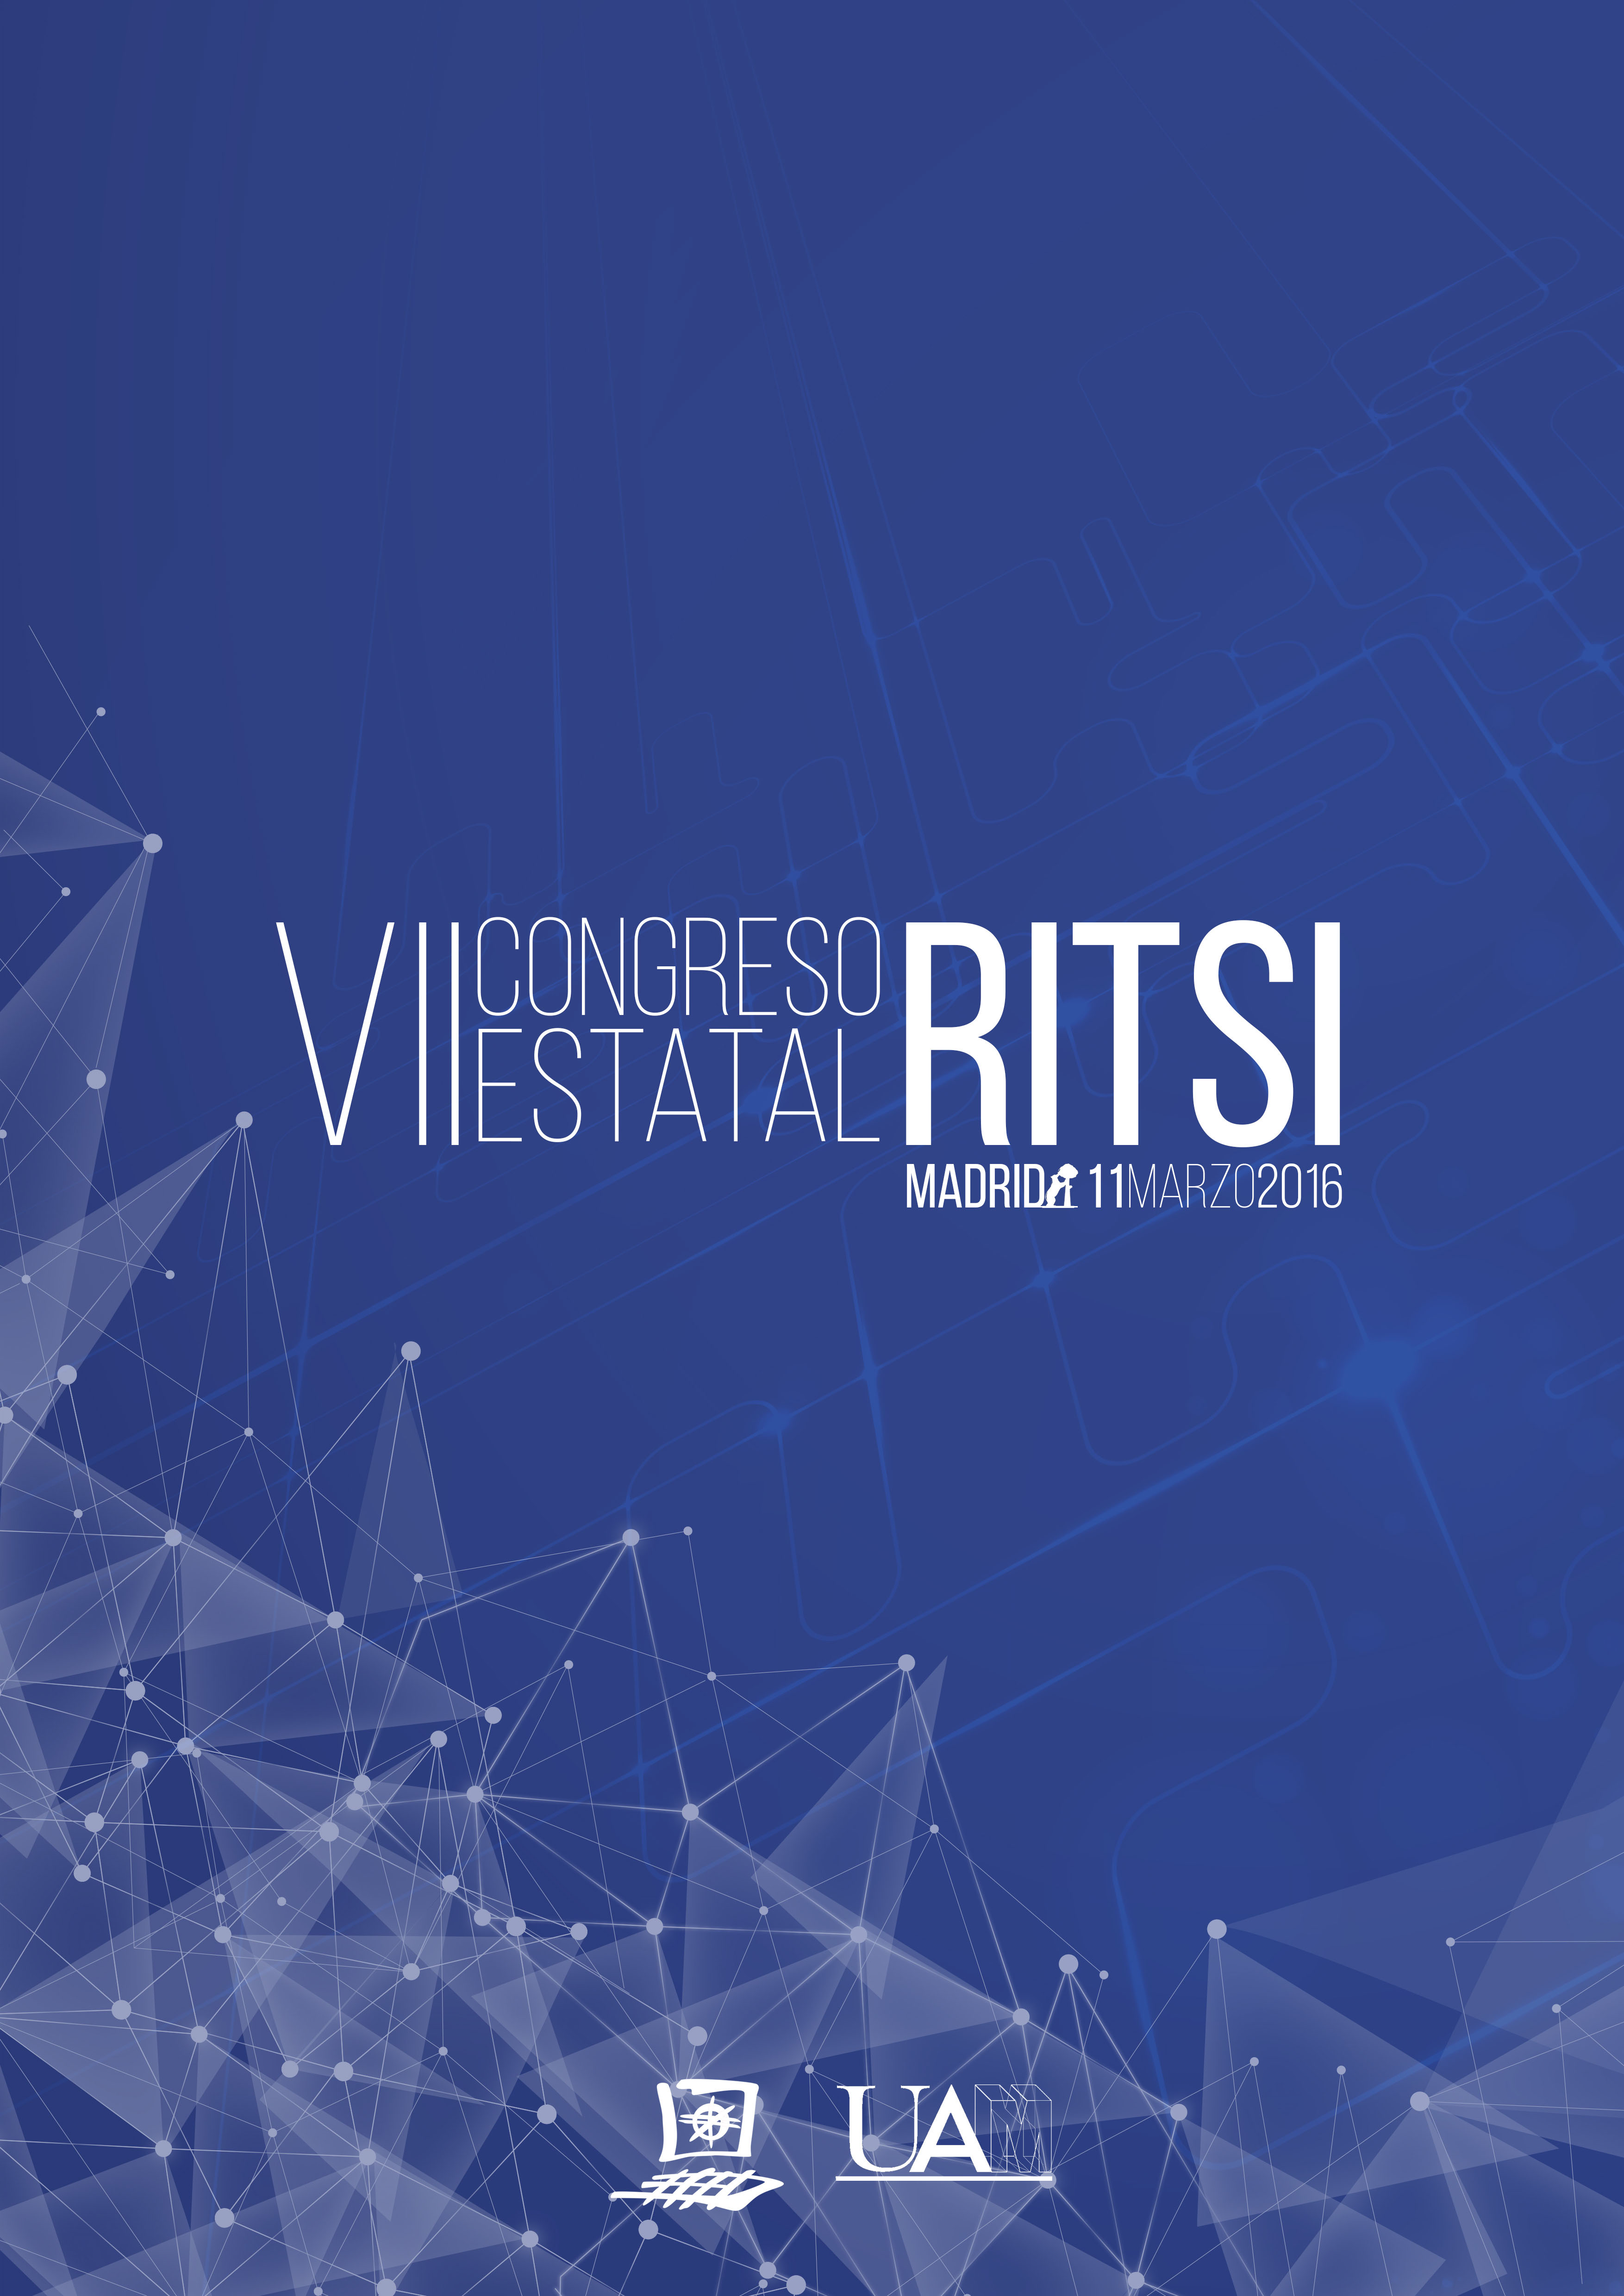 Más de 1000 inscritos en el VII Congreso RITSI